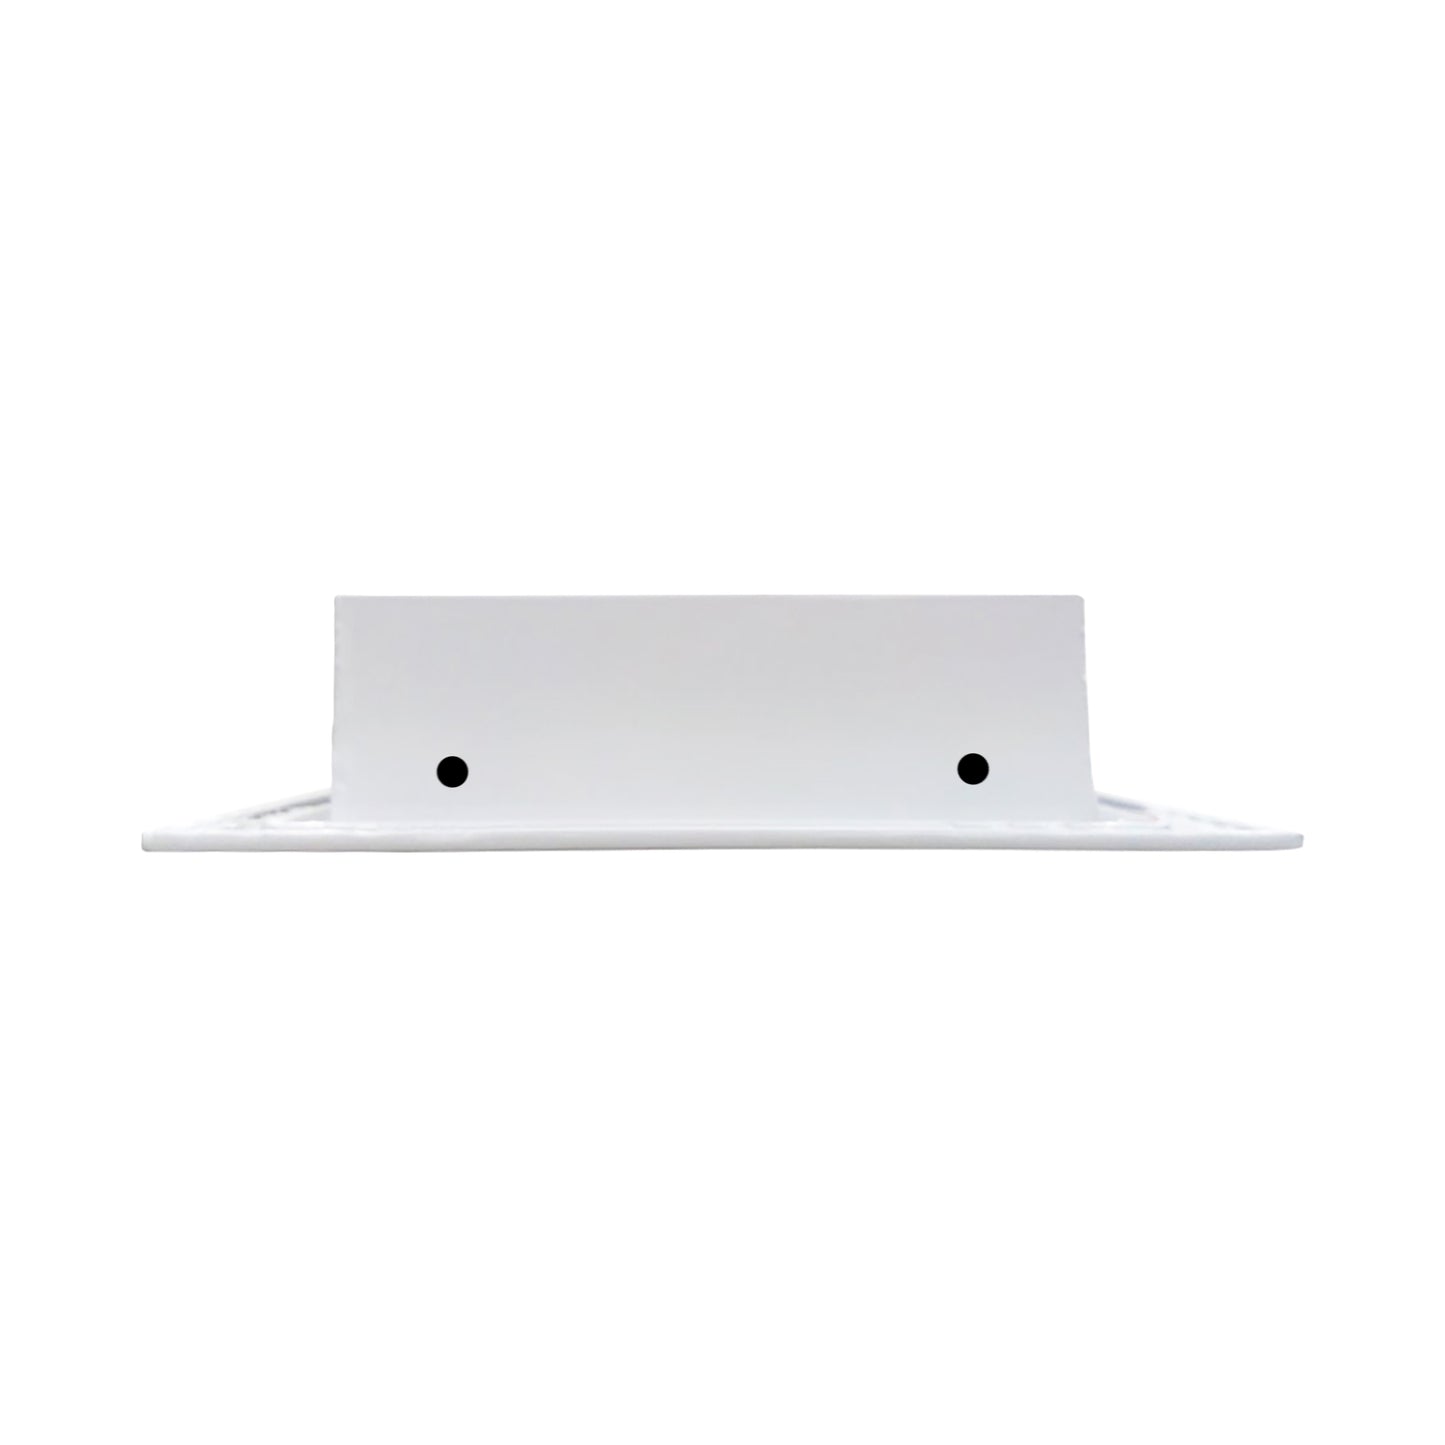 De lado de 8x6 Ventila Moderna de Color Blanco para Aire Acondicionado - 8x6 Estandard Difusor Lineal - Texas Buildmart